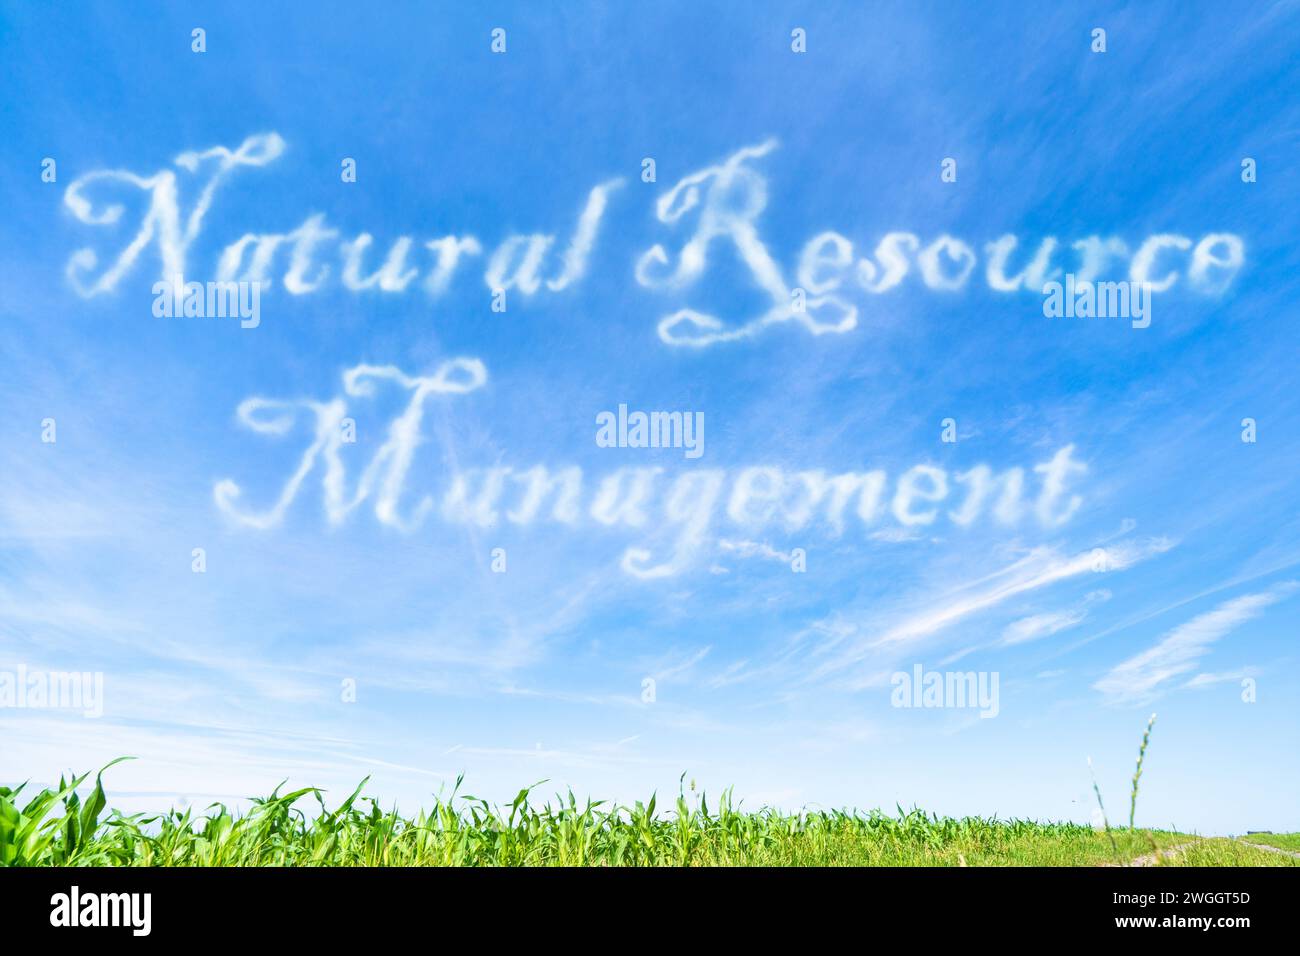 Bewirtschaftung natürlicher Ressourcen: Strategien für die nachhaltige Nutzung und Erhaltung natürlicher Ressourcen. Stockfoto